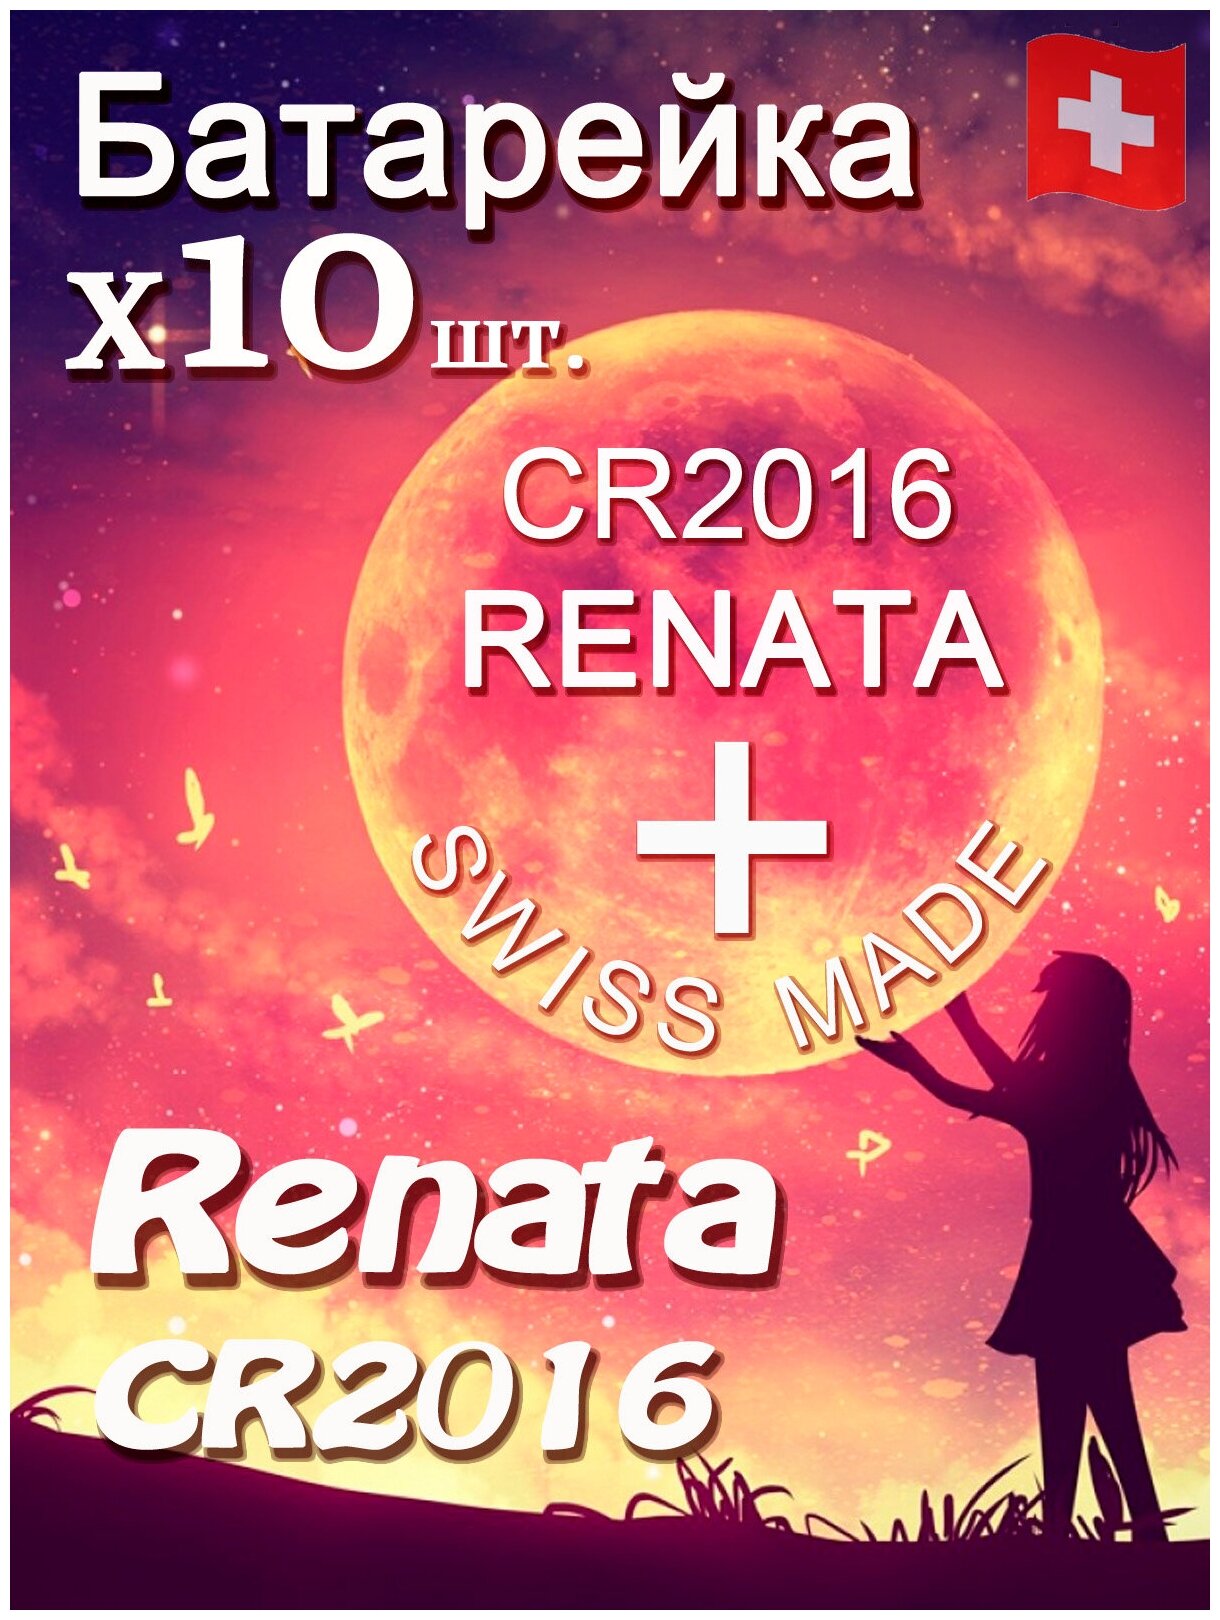 Батарейка Renata CR2016 B1 10шт/Элемент питания рената CR2016 B1 10шт